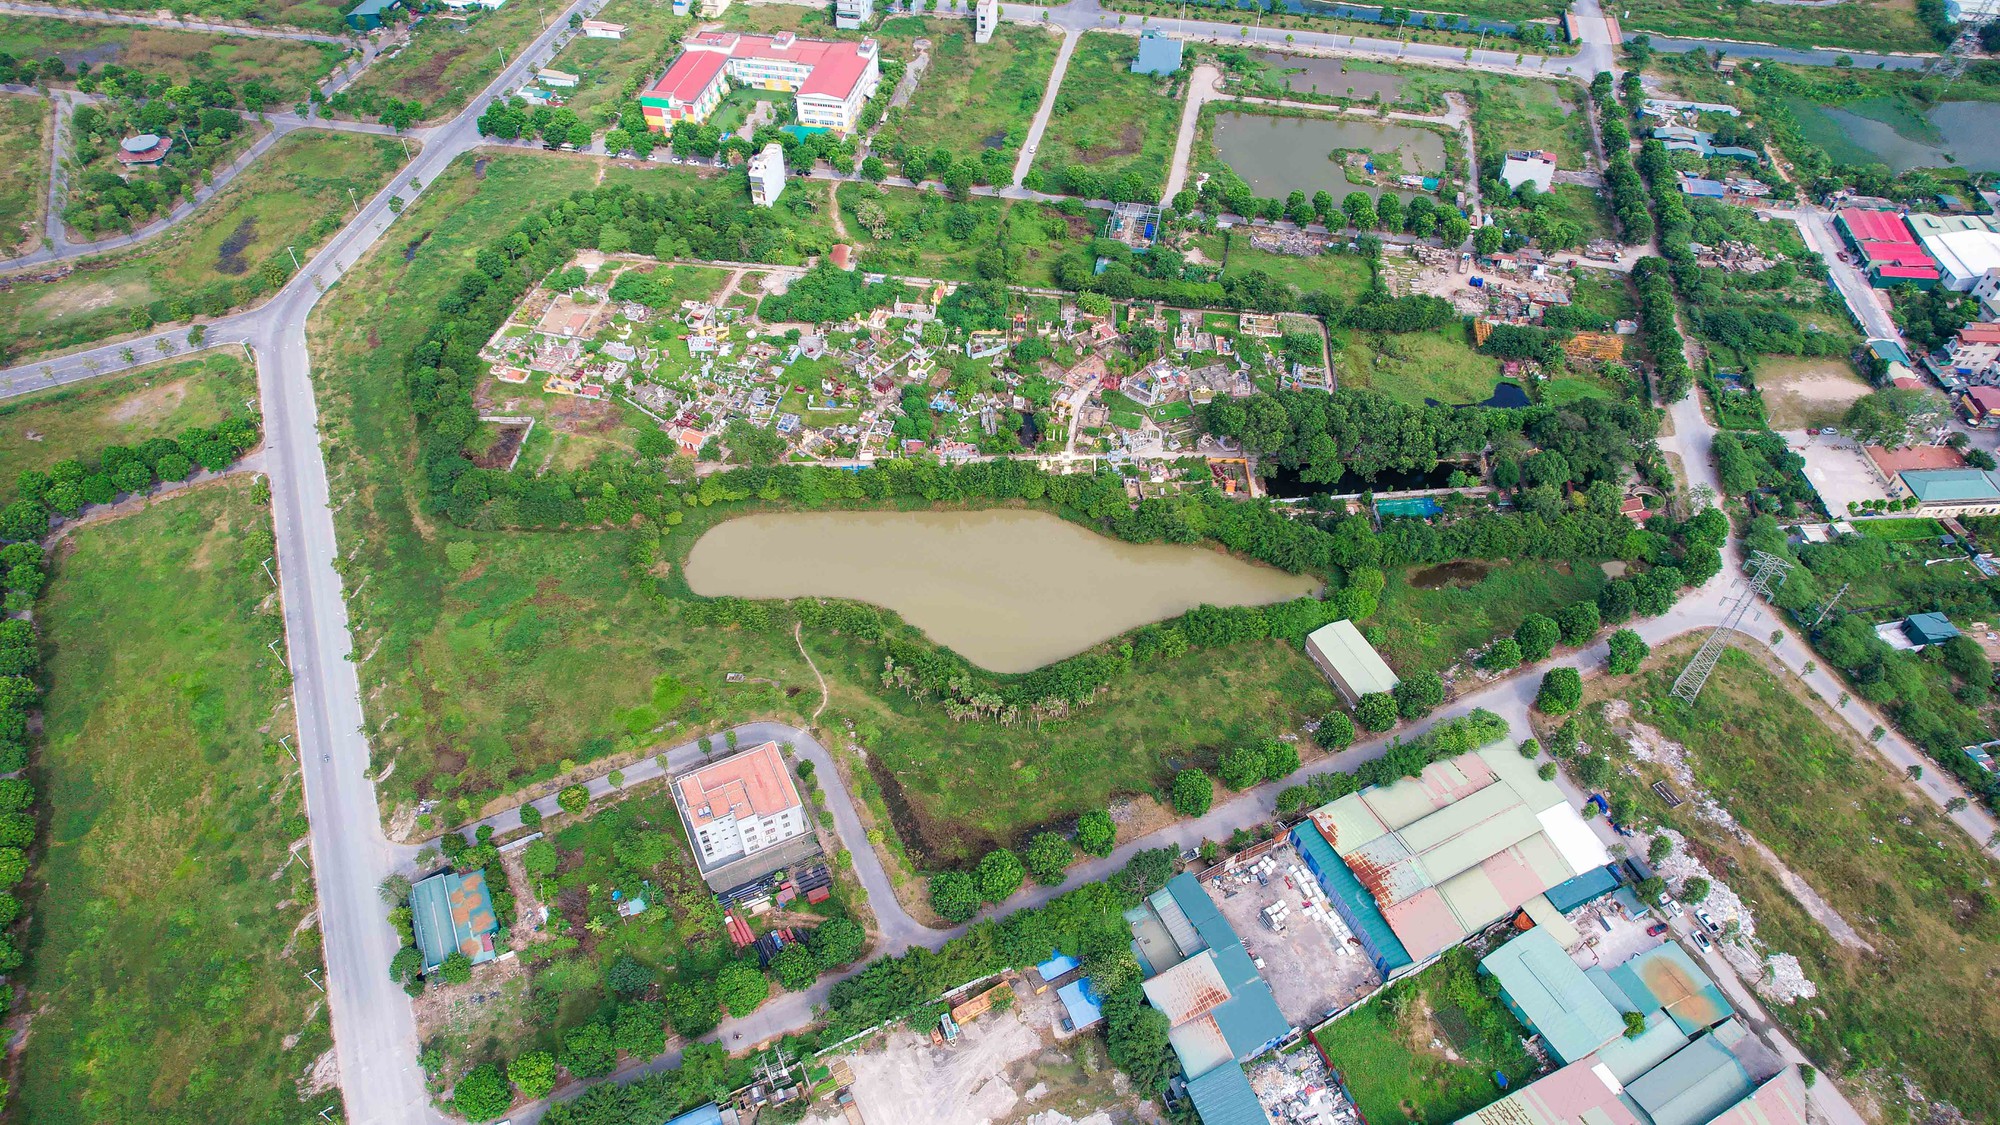 Cận cảnh trạm cấp nước Thanh Hà bị cư dân phàn nàn về chất lượng nước - Ảnh 7.